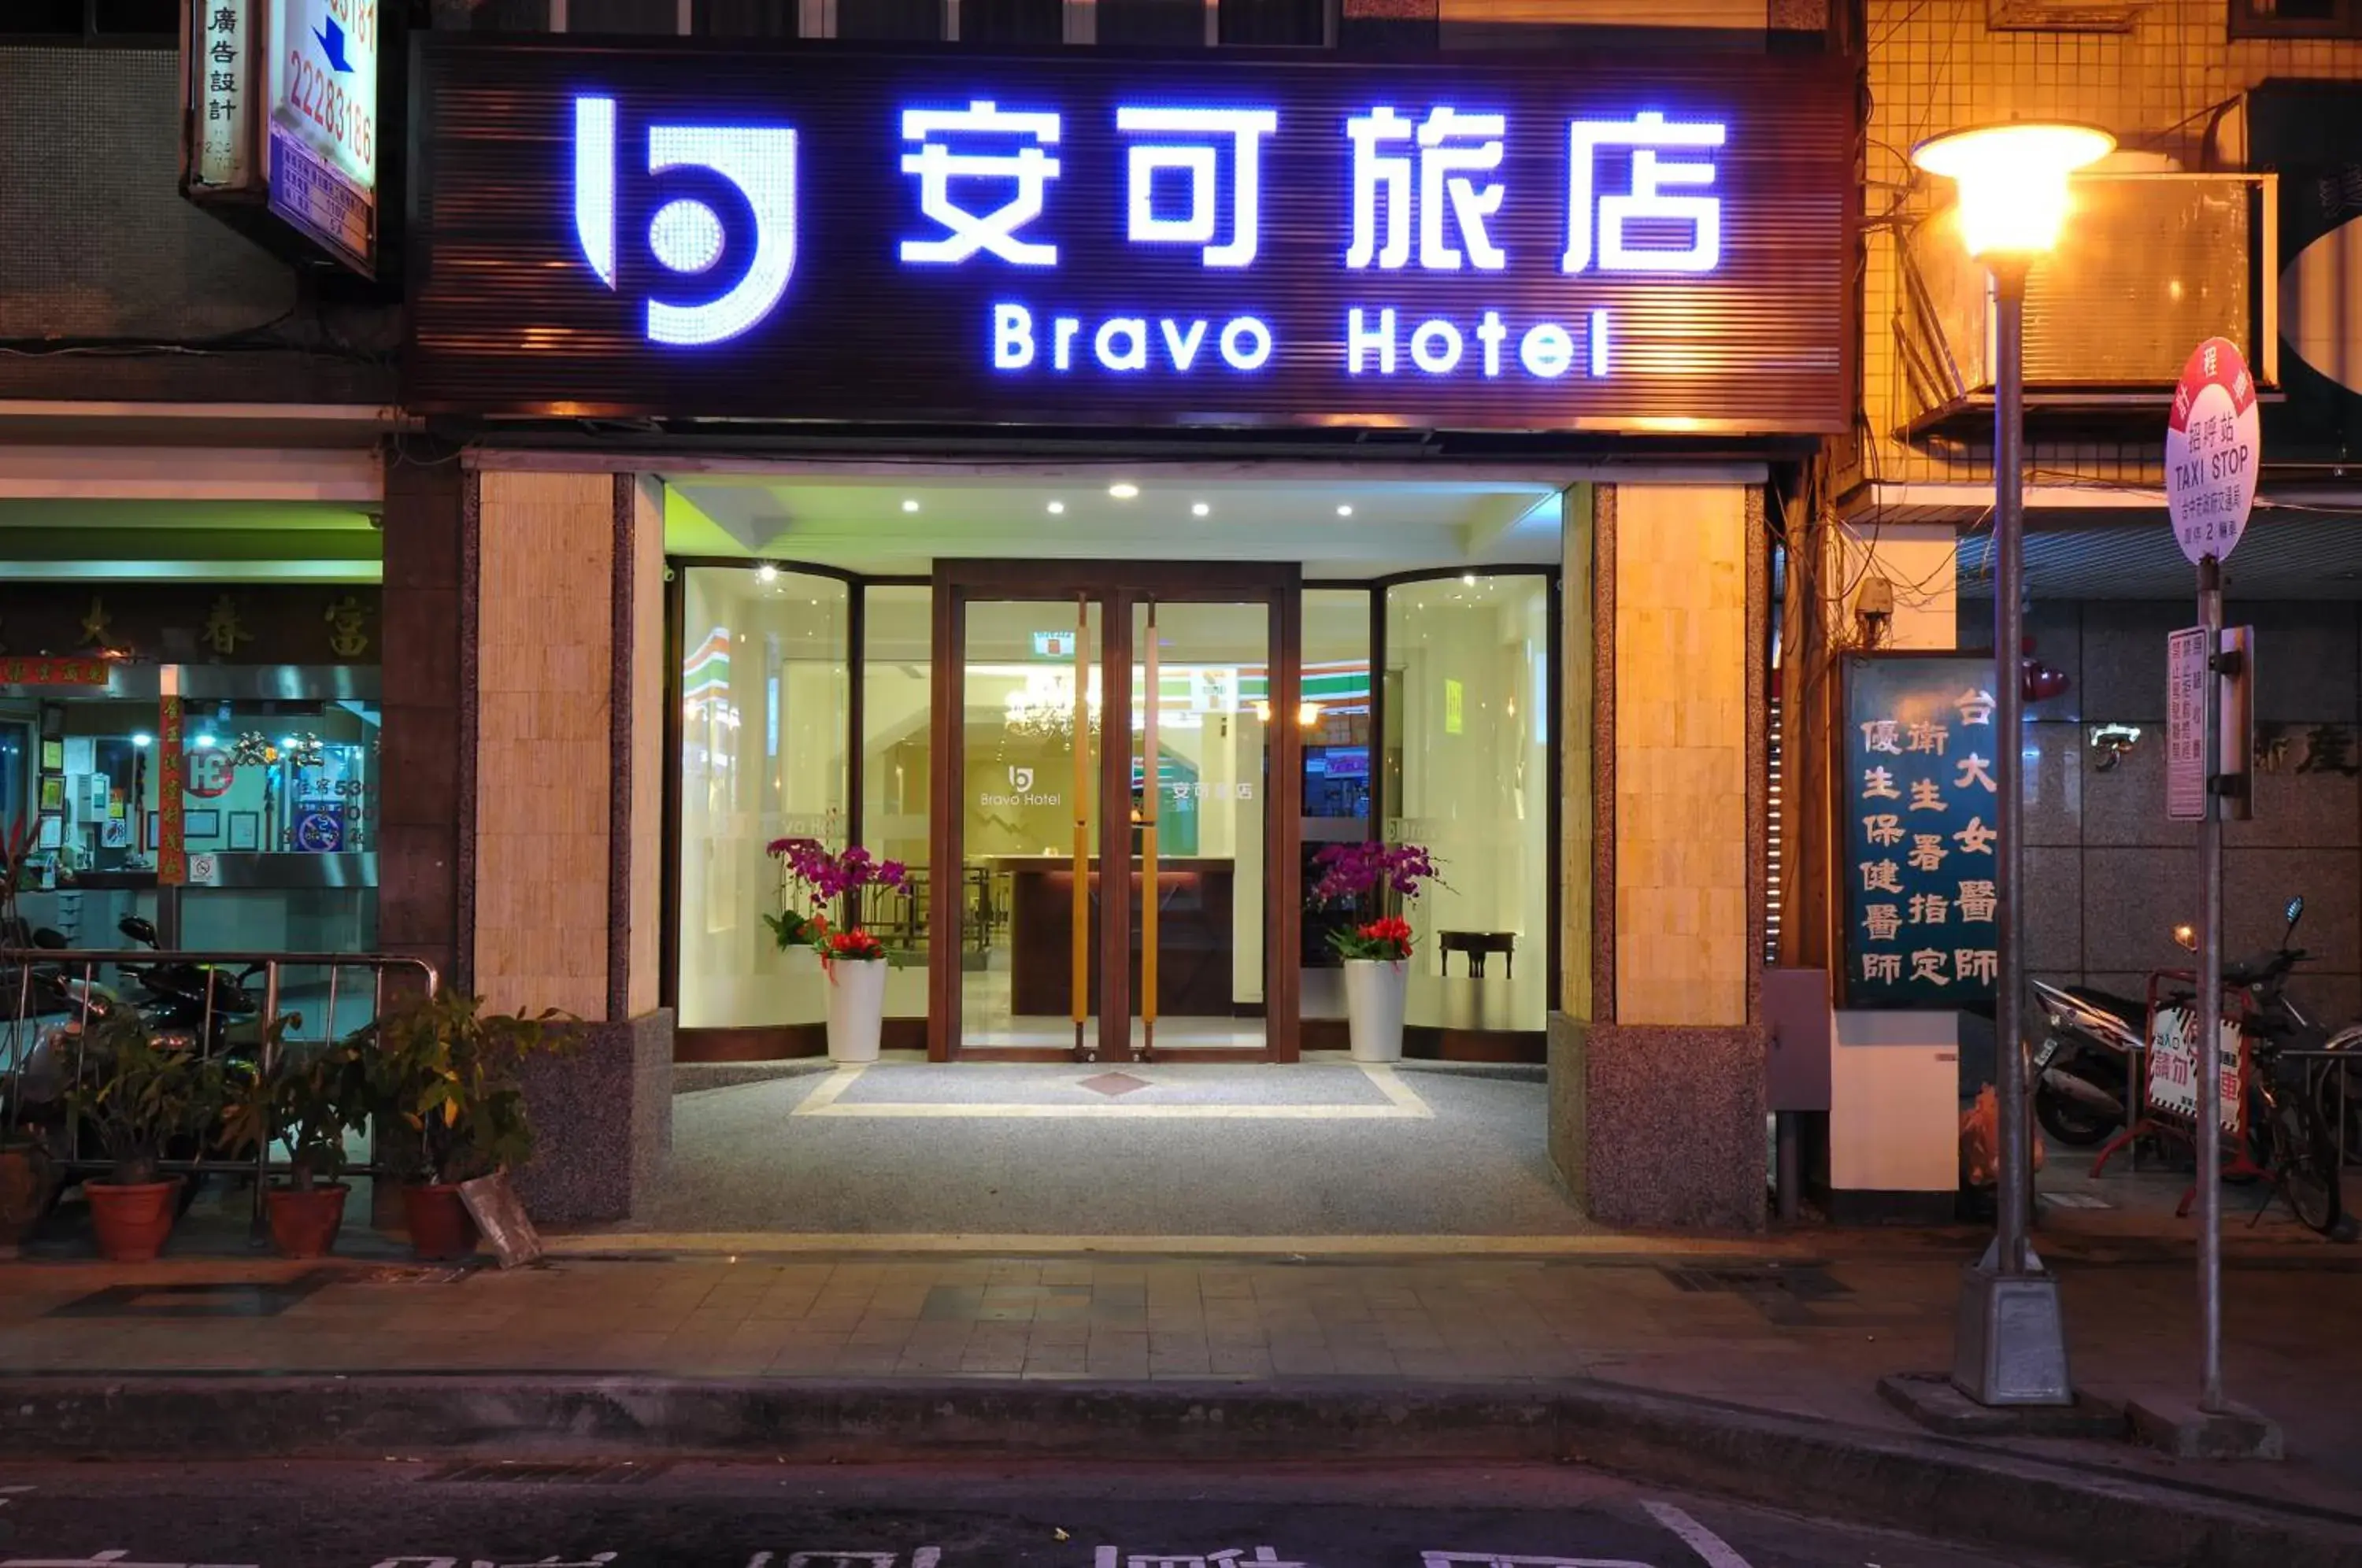 Property building in Bravo Hotel